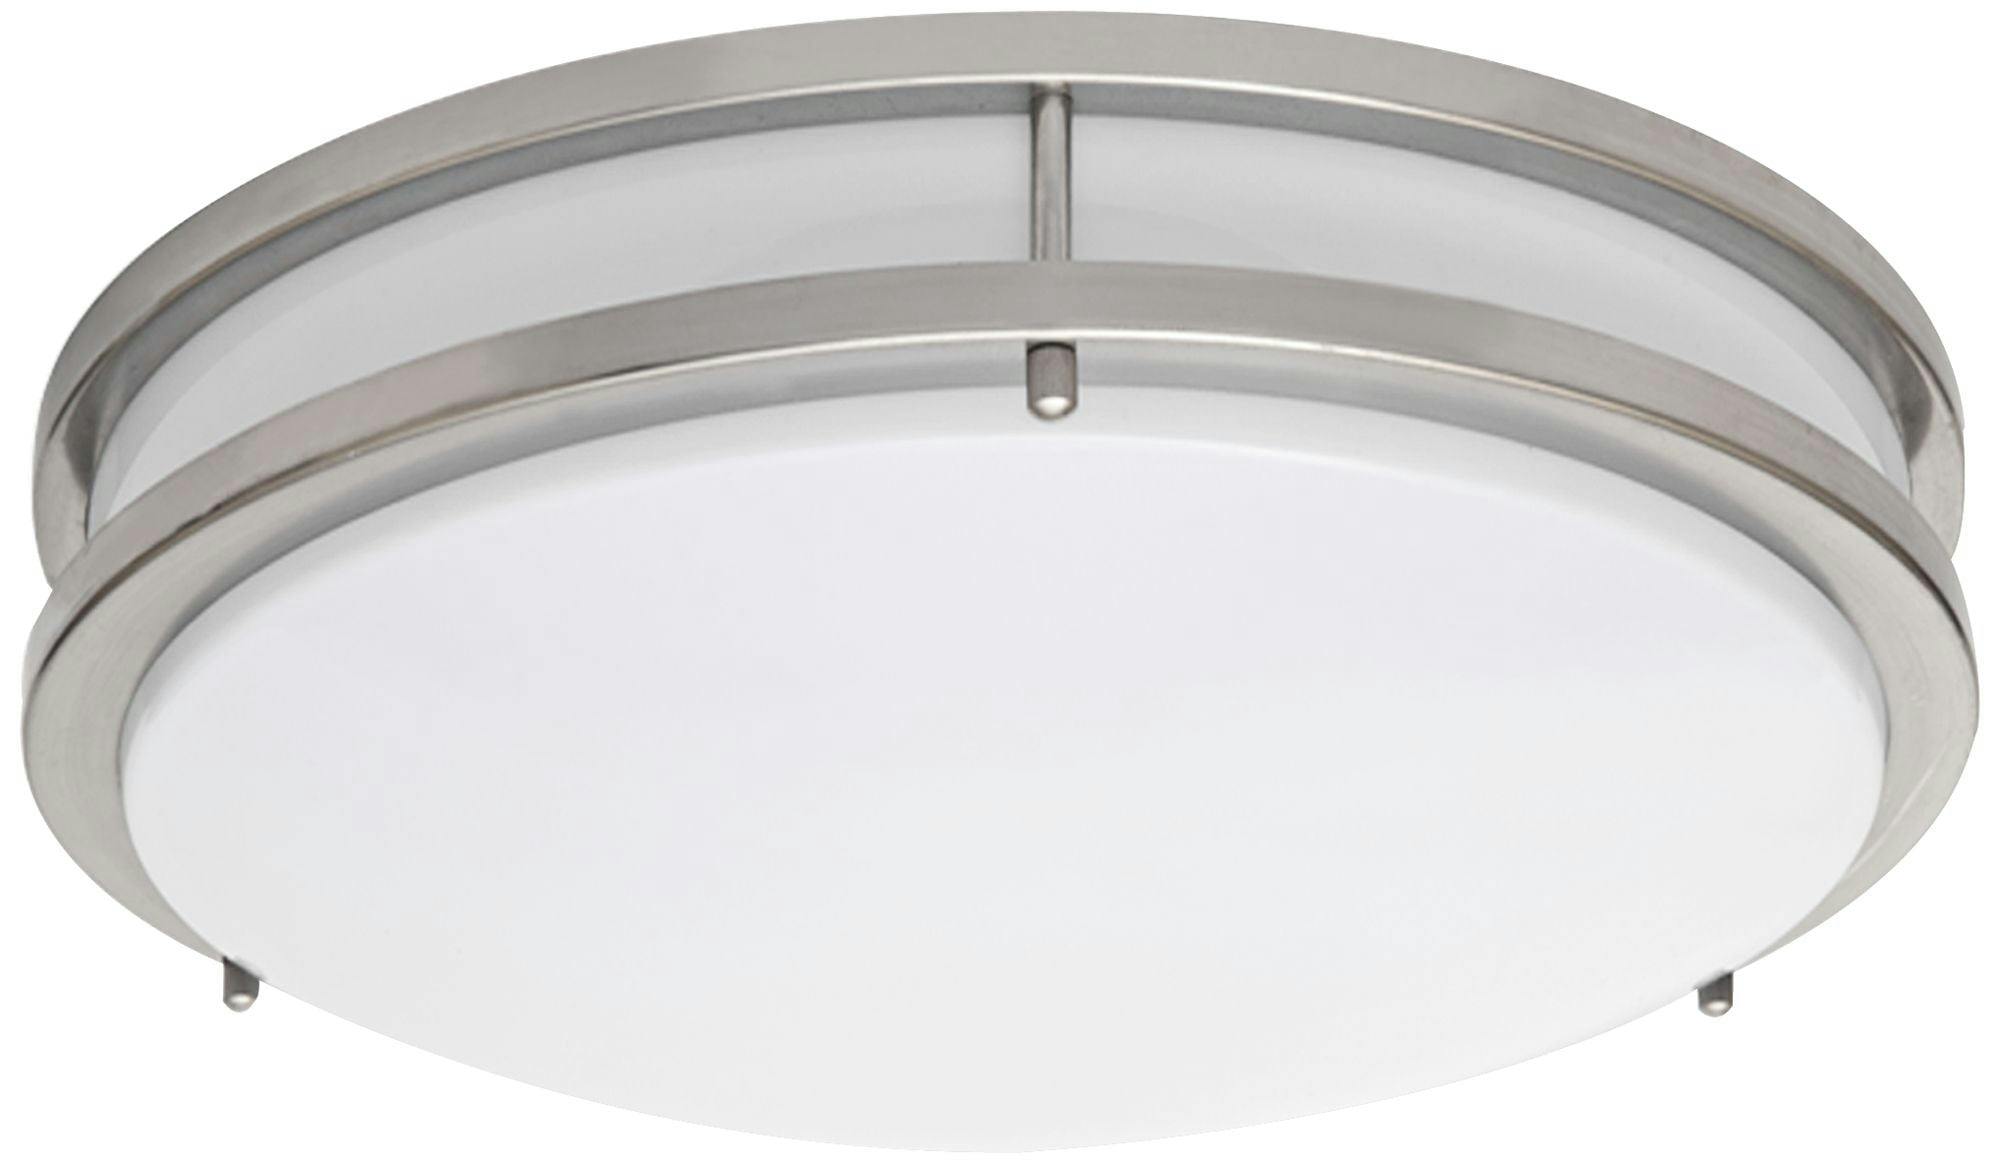 Zaire 18" Brushed Nickel LED Flushmount Ceiling Light